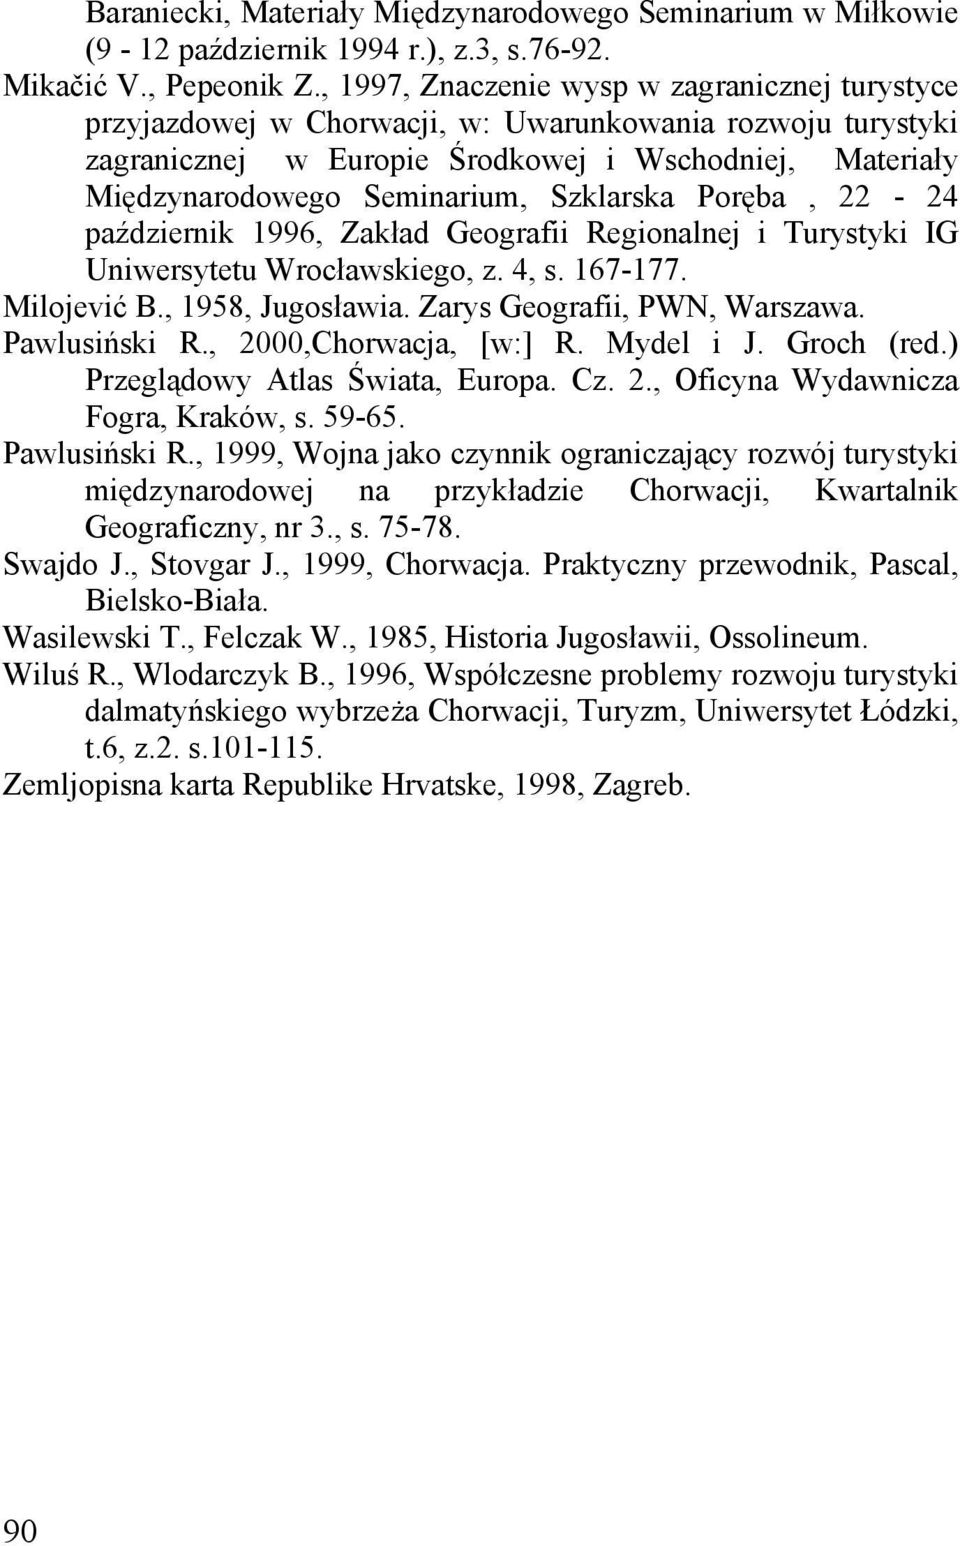 Szklarska Poręba, 22-24 październik 1996, Zakład Geografii Regionalnej i Turystyki IG Uniwersytetu Wrocławskiego, z. 4, s. 167-177. Milojević B., 1958, Jugosławia. Zarys Geografii, PWN, Warszawa.